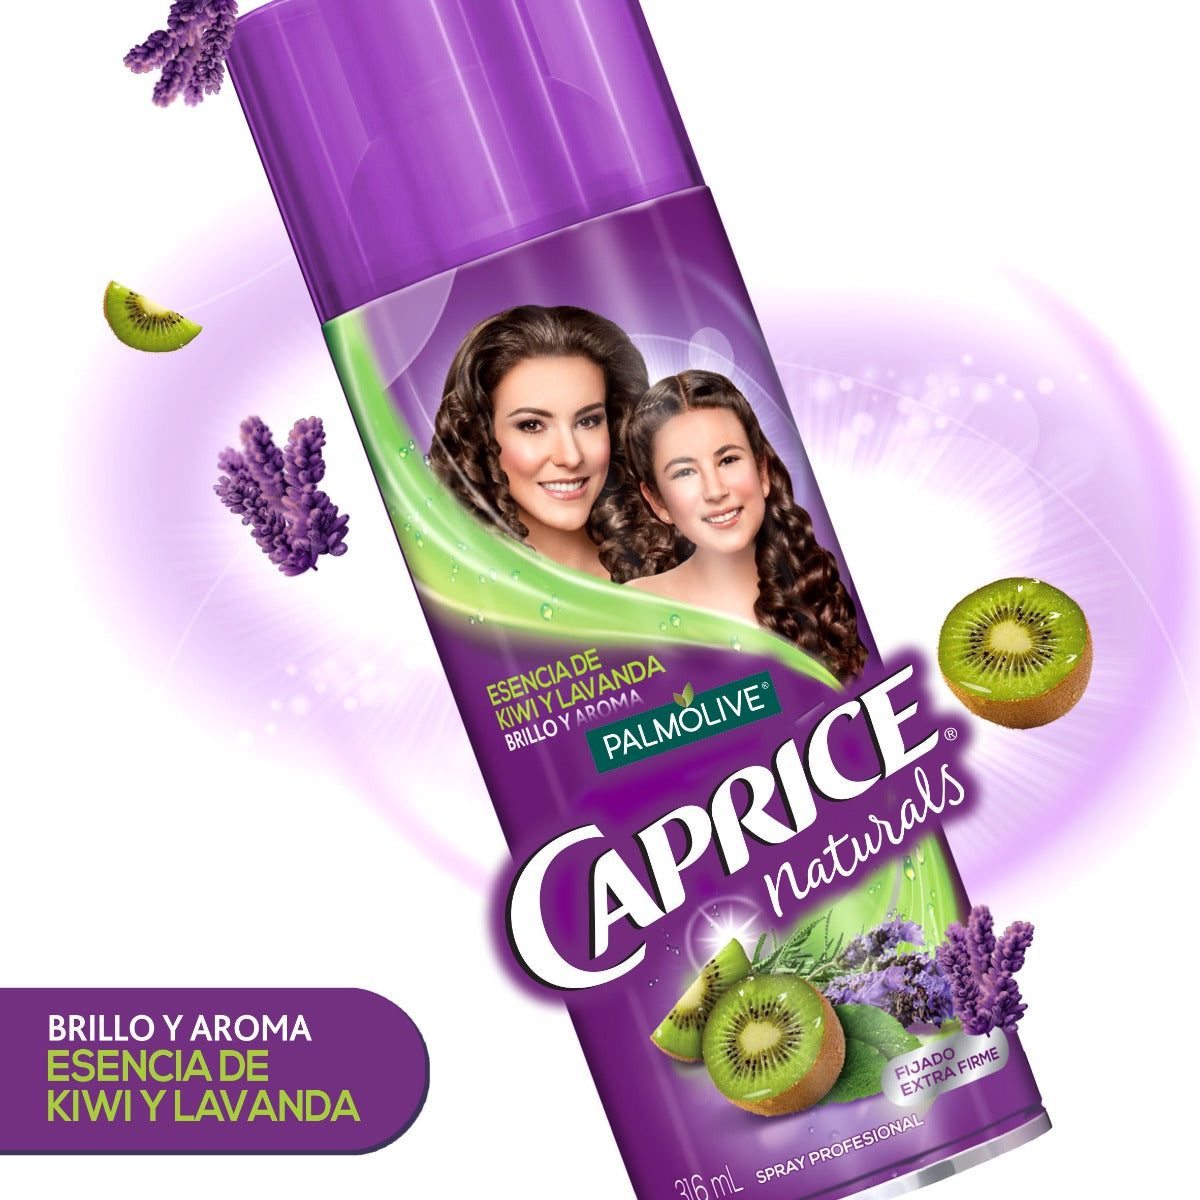 Spray para el Cabello Palmolive Caprice Naturals Esencia de Kiwi y Lavanda de 316 ml